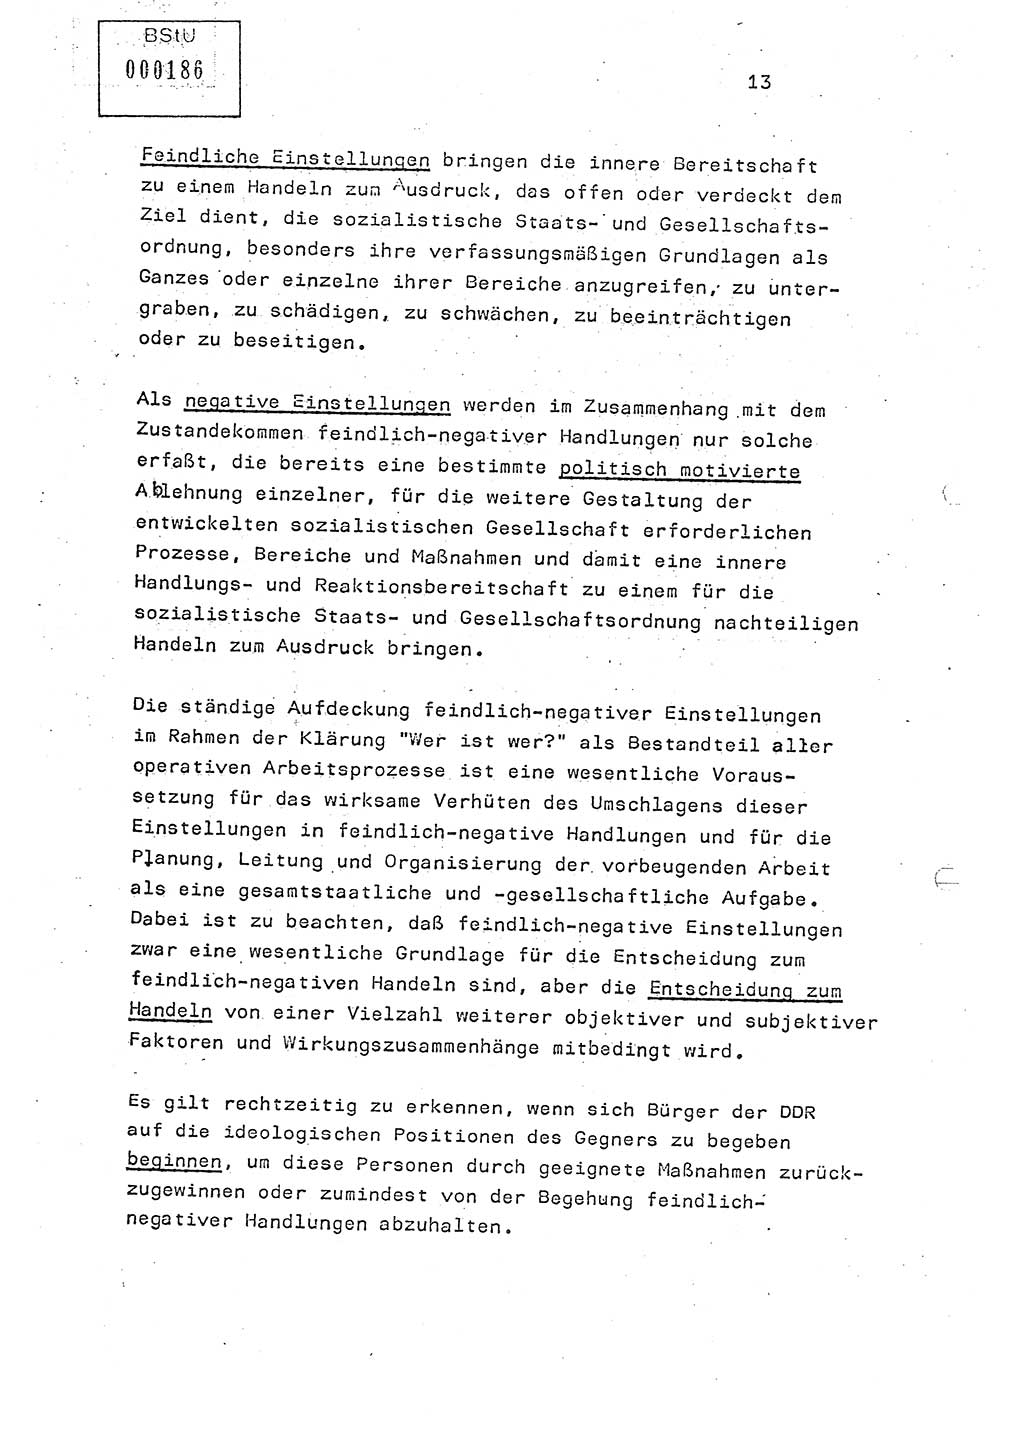 Studienmaterial Ministerium für Staatssicherheit (MfS) [Deutsche Demokratische Republik (DDR)], Hauptabteilung (HA) Ⅸ/ Auswertungs- und Kontrollgruppe (AKG), Berlin ca. 1986, Seite 13 (Stud.-Mat. MfS DDR HA Ⅸ/AKG 1986, S. 13)